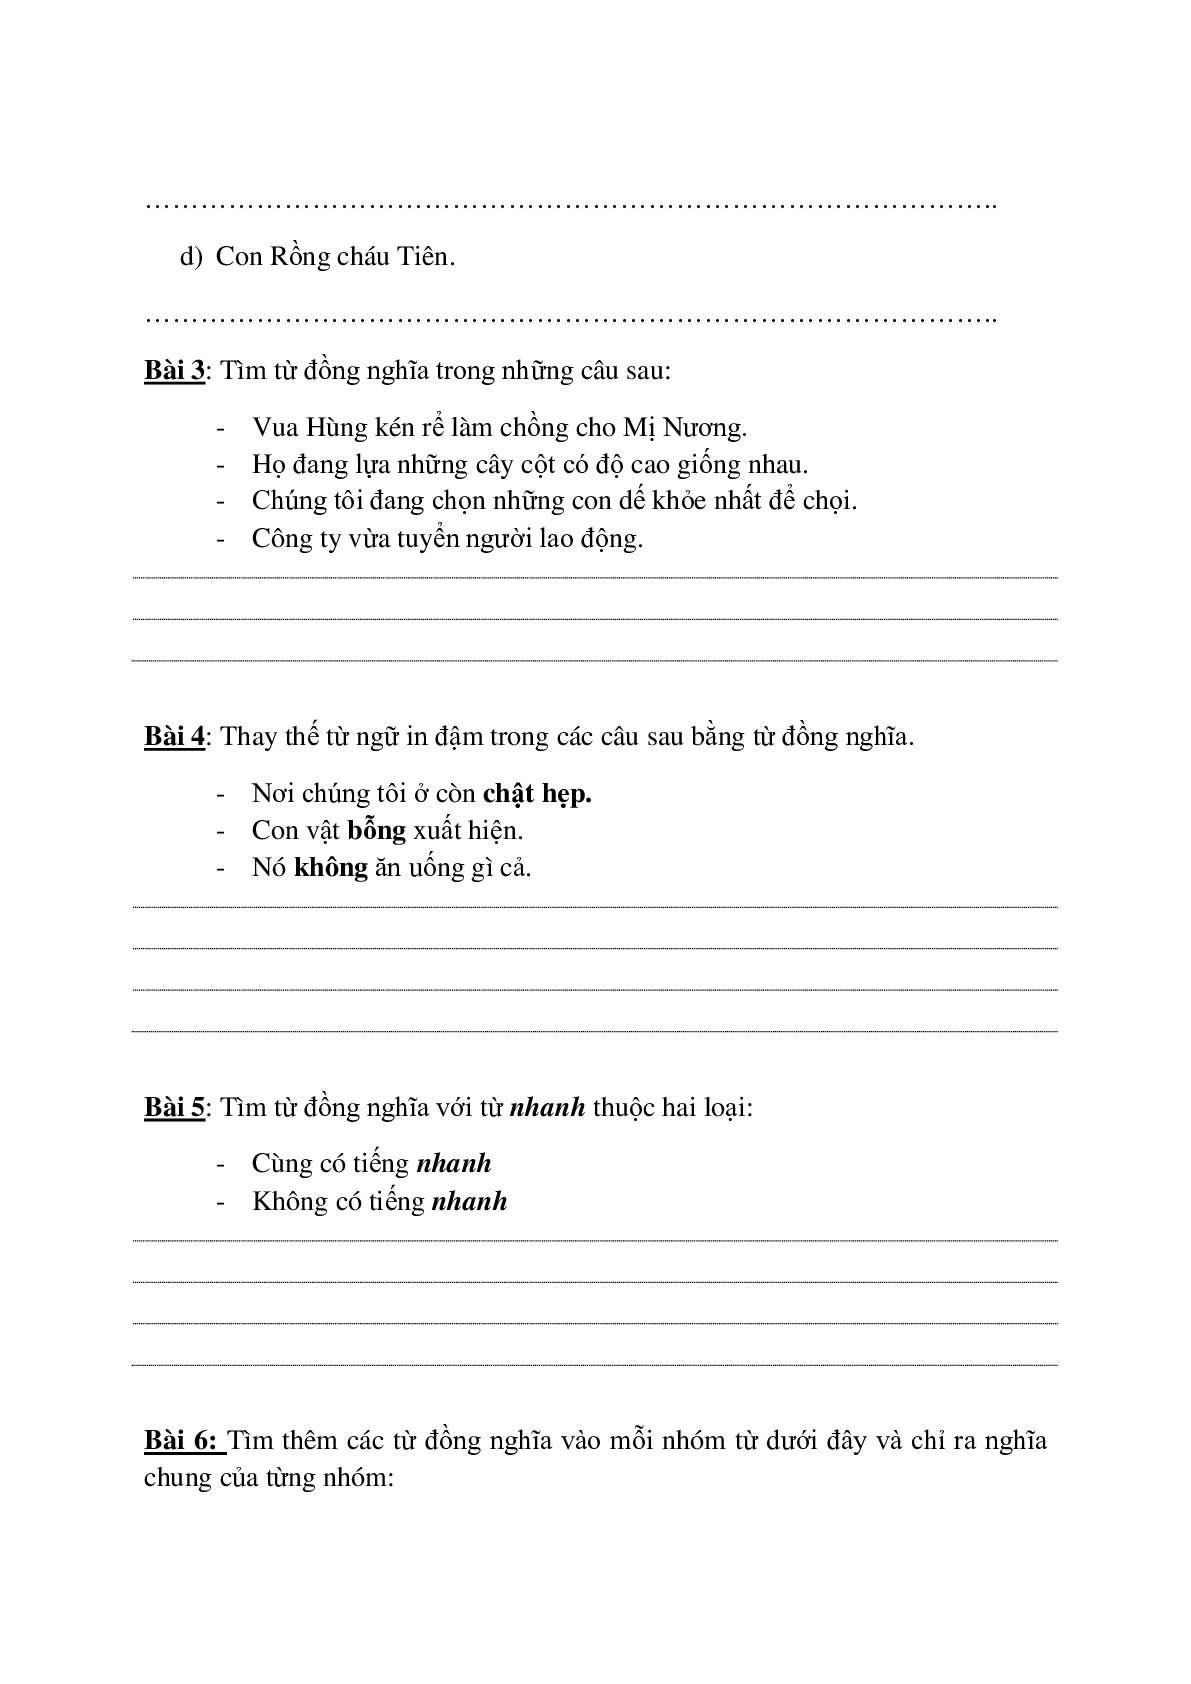 Bài tập nâng cao môn Tiếng Việt lớp 5 (trang 5)